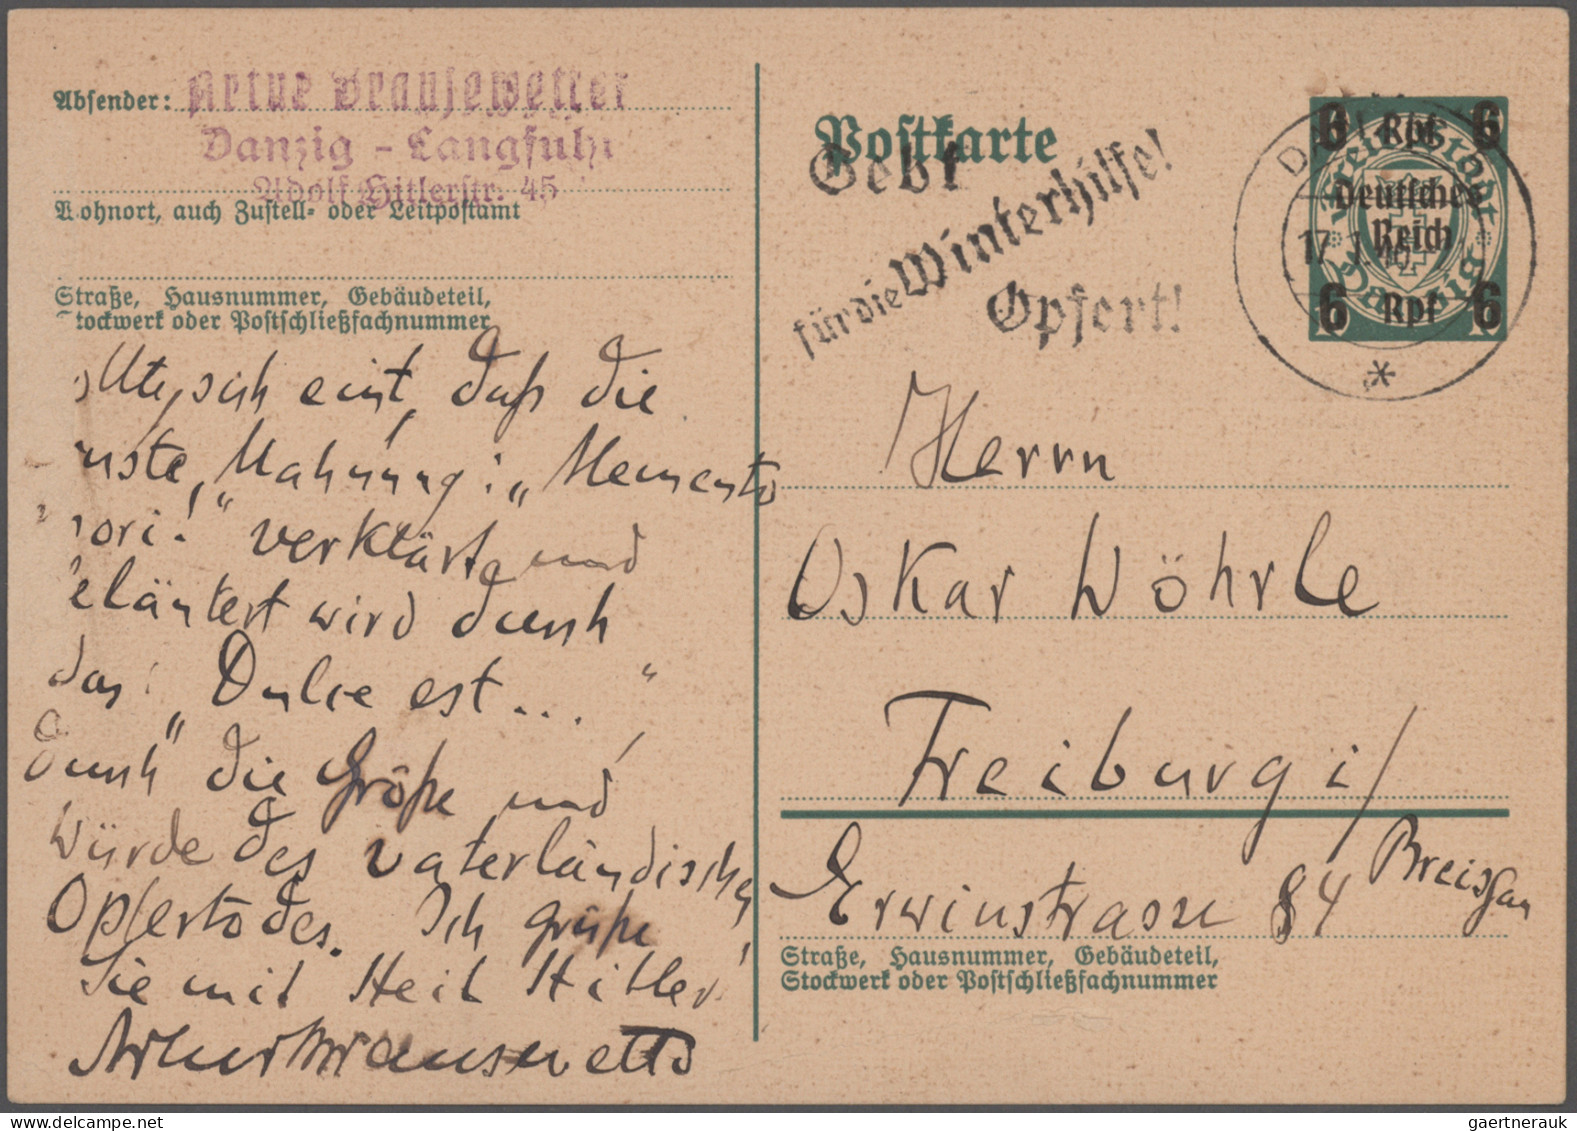 Thematics: Printing-writers, Authors: 1914/1943 (ca.), Bestand Von Einigen Hunde - Ecrivains